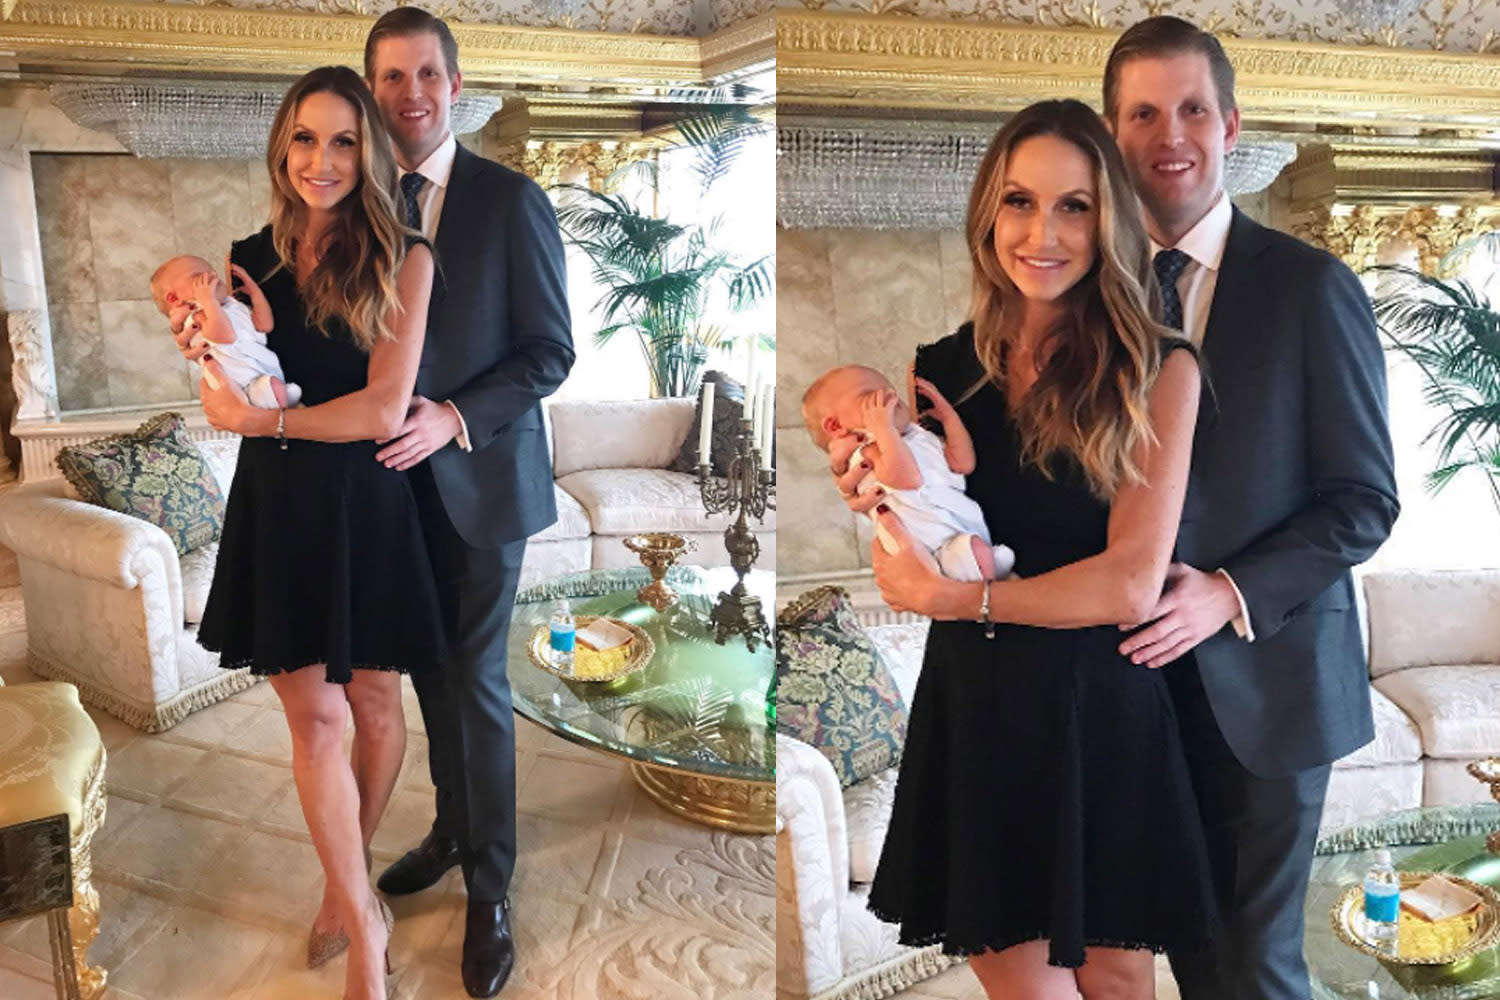 Lara Trump looks fantastic a week after son's birth [Video] - 1500 x 1000 jpeg 241kB